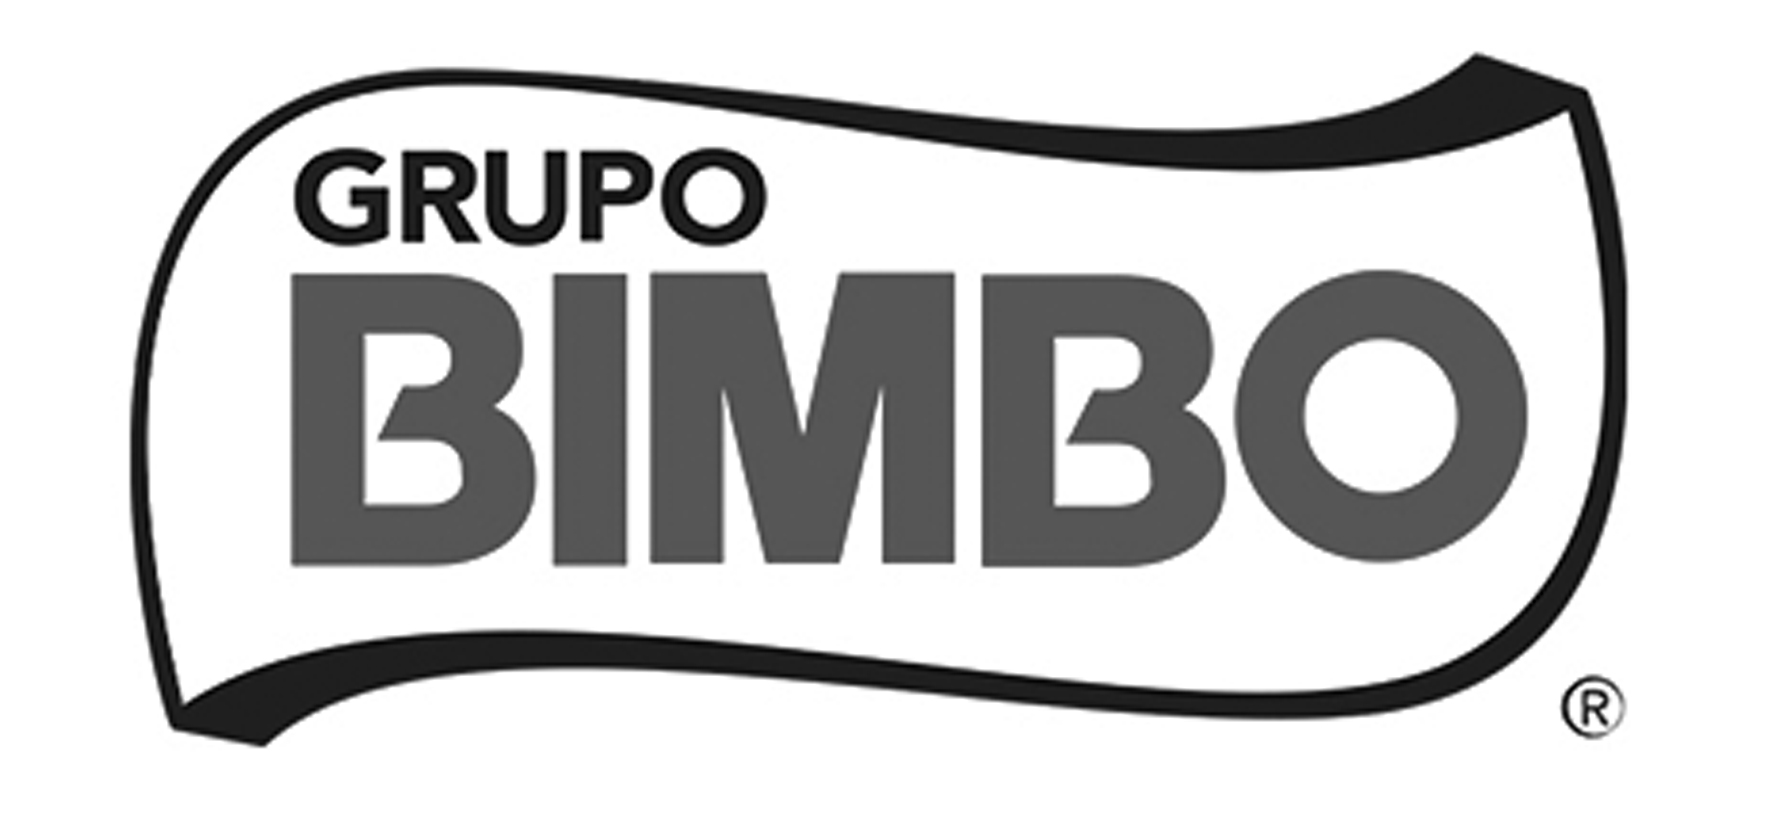 LOGO BIMBO